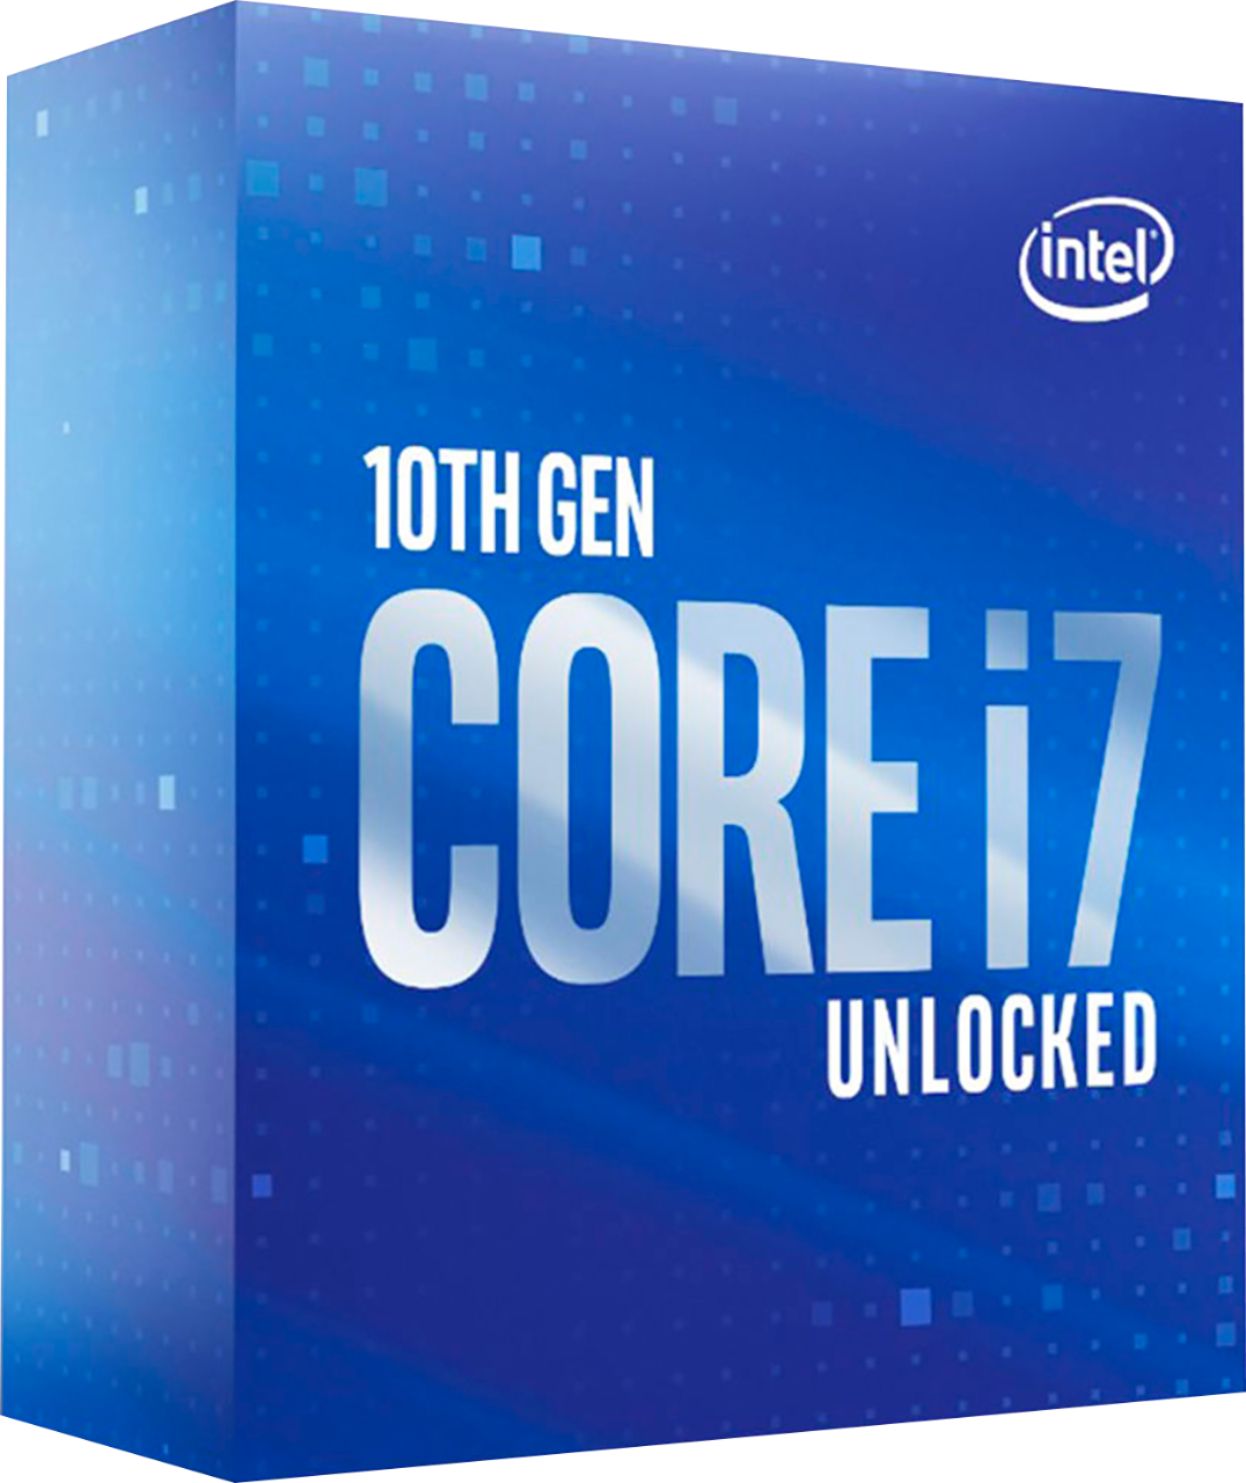 Intel Core i7-10700K 10th Generation 8-Core 16-Thread 3.8 GHz (5.1 GHz Turbo) Socket Unlocked Desktop Processor BX8070110700K - Best Buy